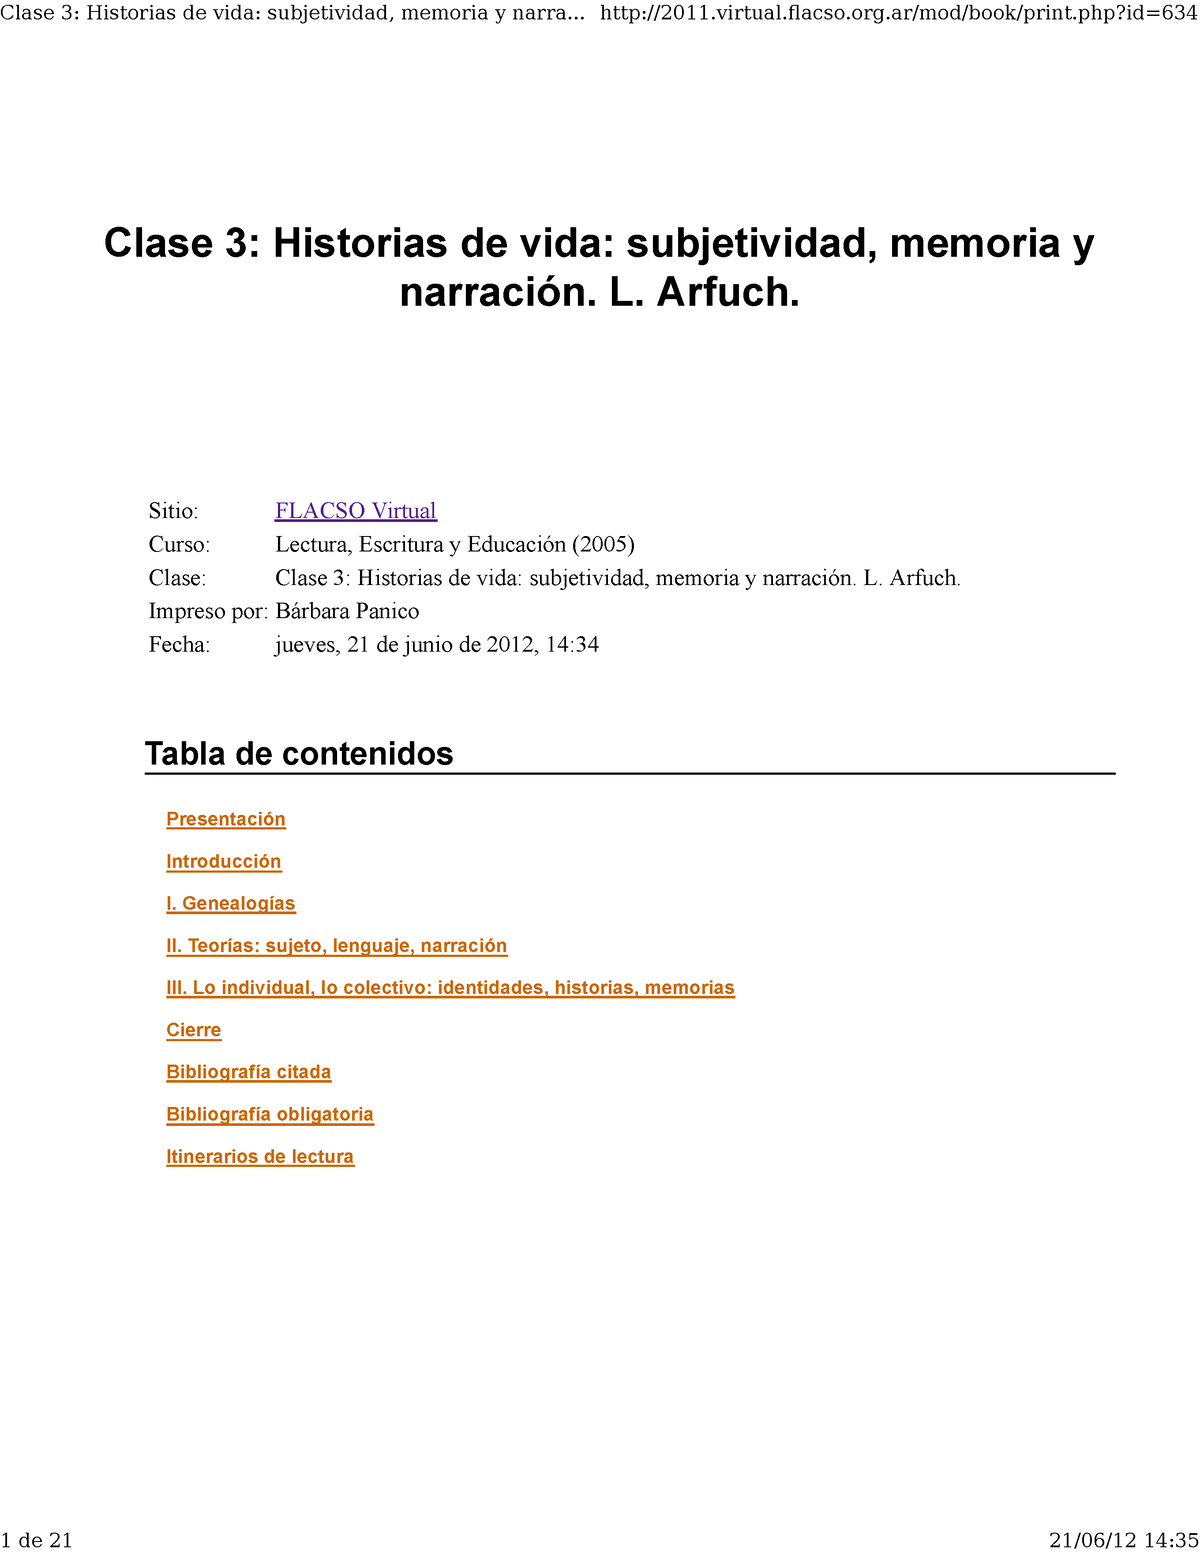 Arfuch Leonor Historias De Vida Clase 3 Historias De Vida Subjetividad Memoria Y Narración 7588